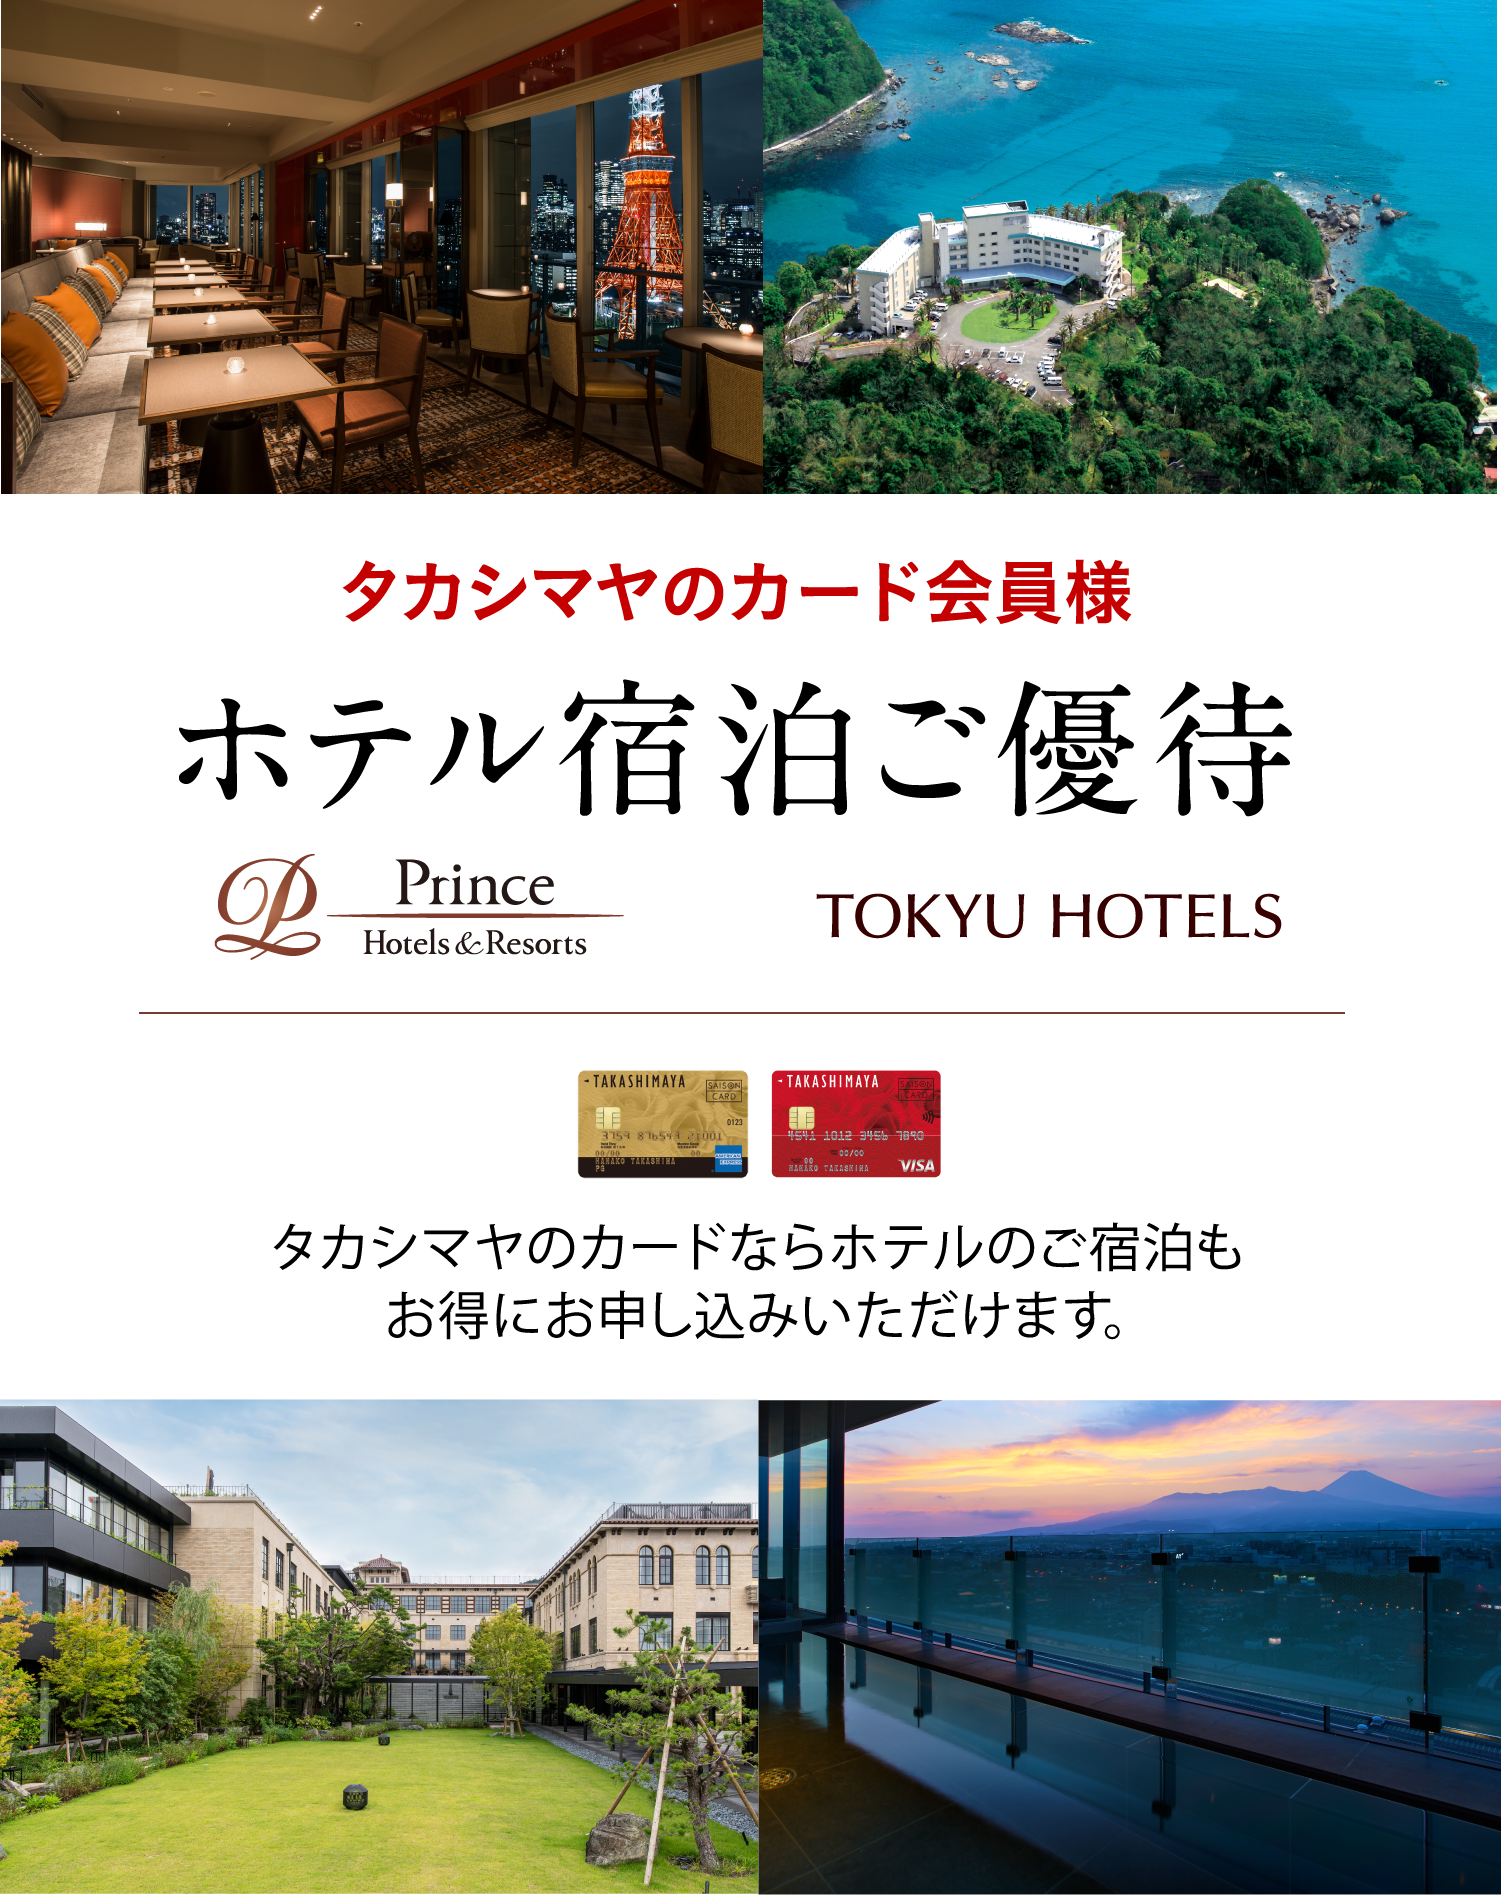 タカシマヤのカード会員様 ホテル宿泊ご優待 タカシマヤのカードならホテルのご宿泊もお得にお申し込みいただけます。